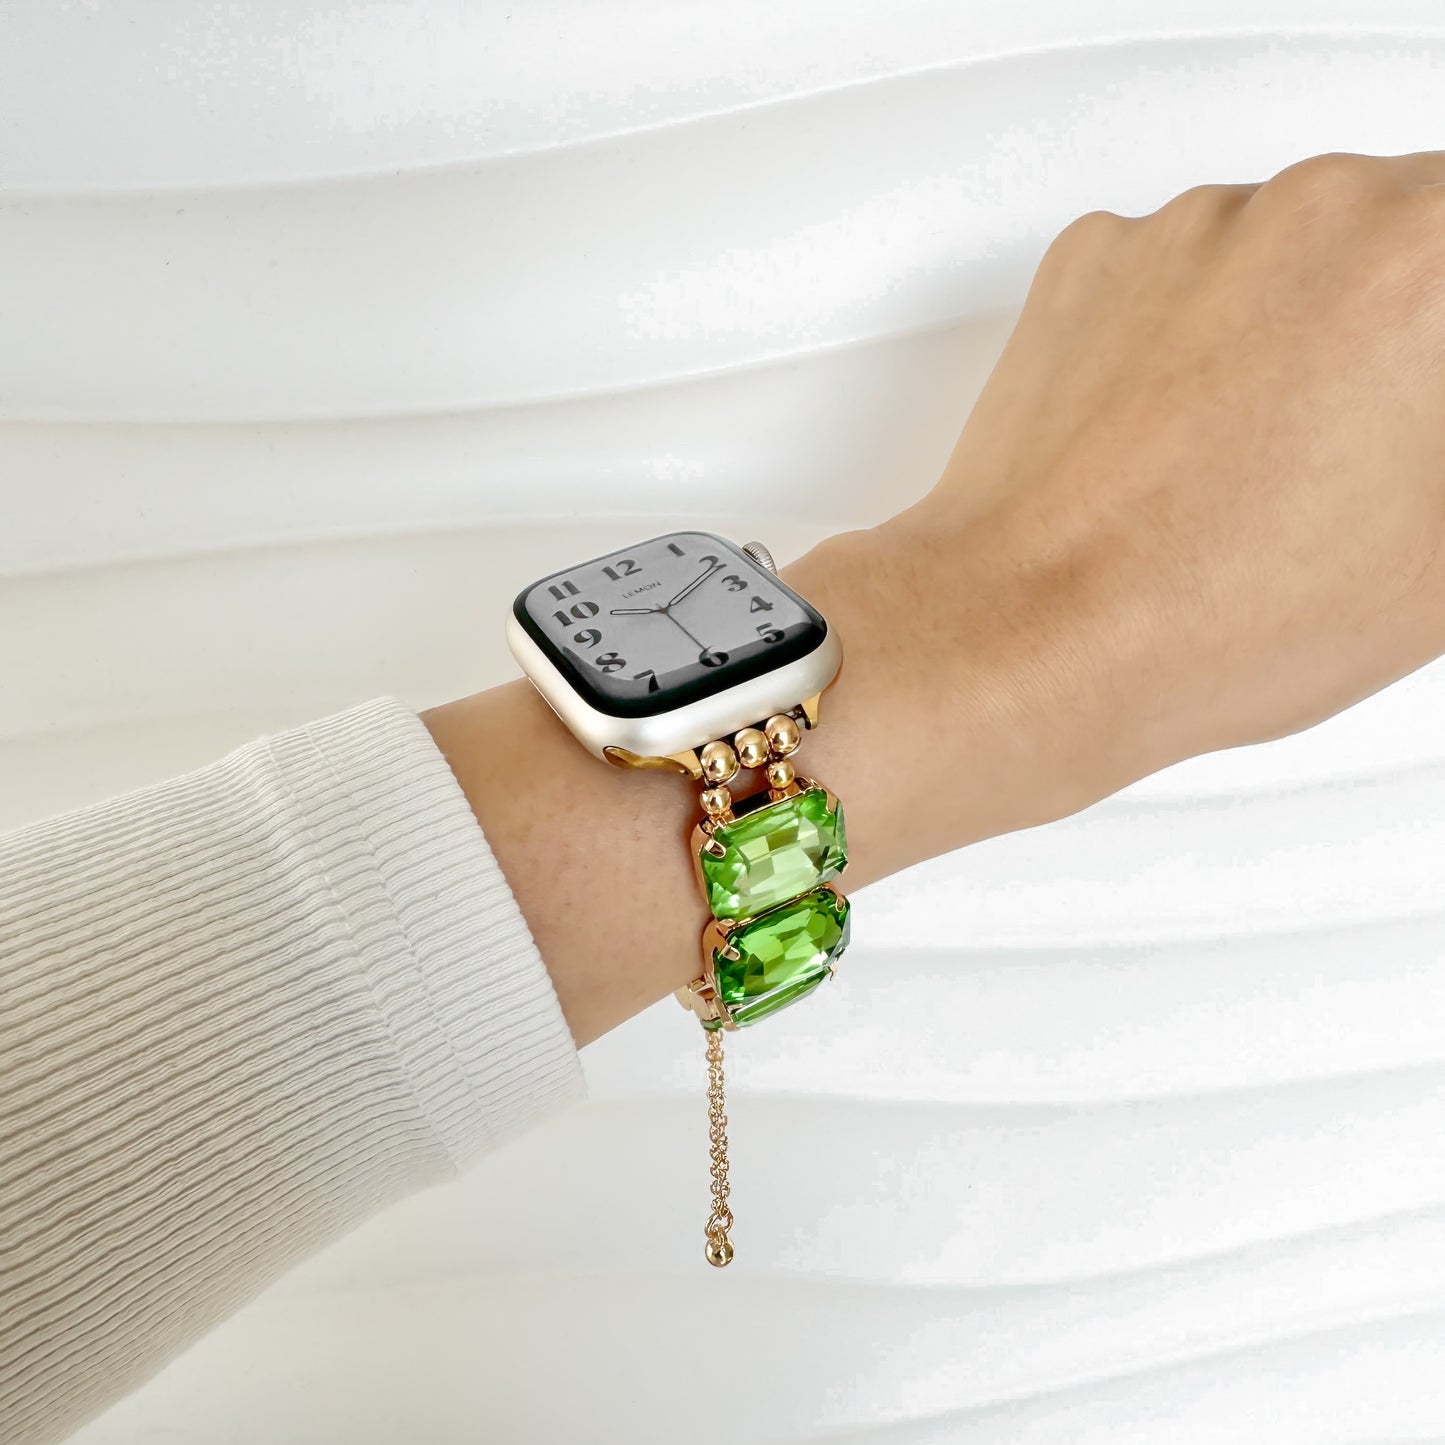 The Modern Apple Watch Bracelet - Green